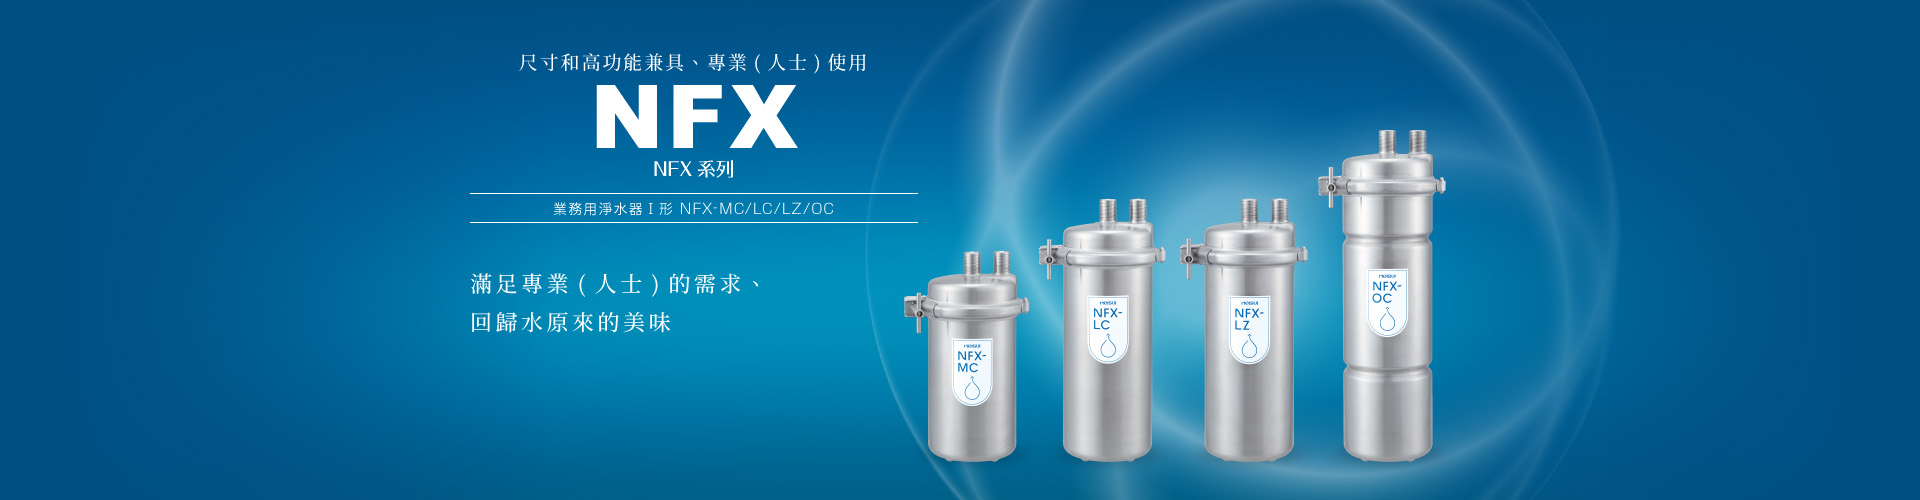 NFX系列 業務用淨水器Ⅰ形